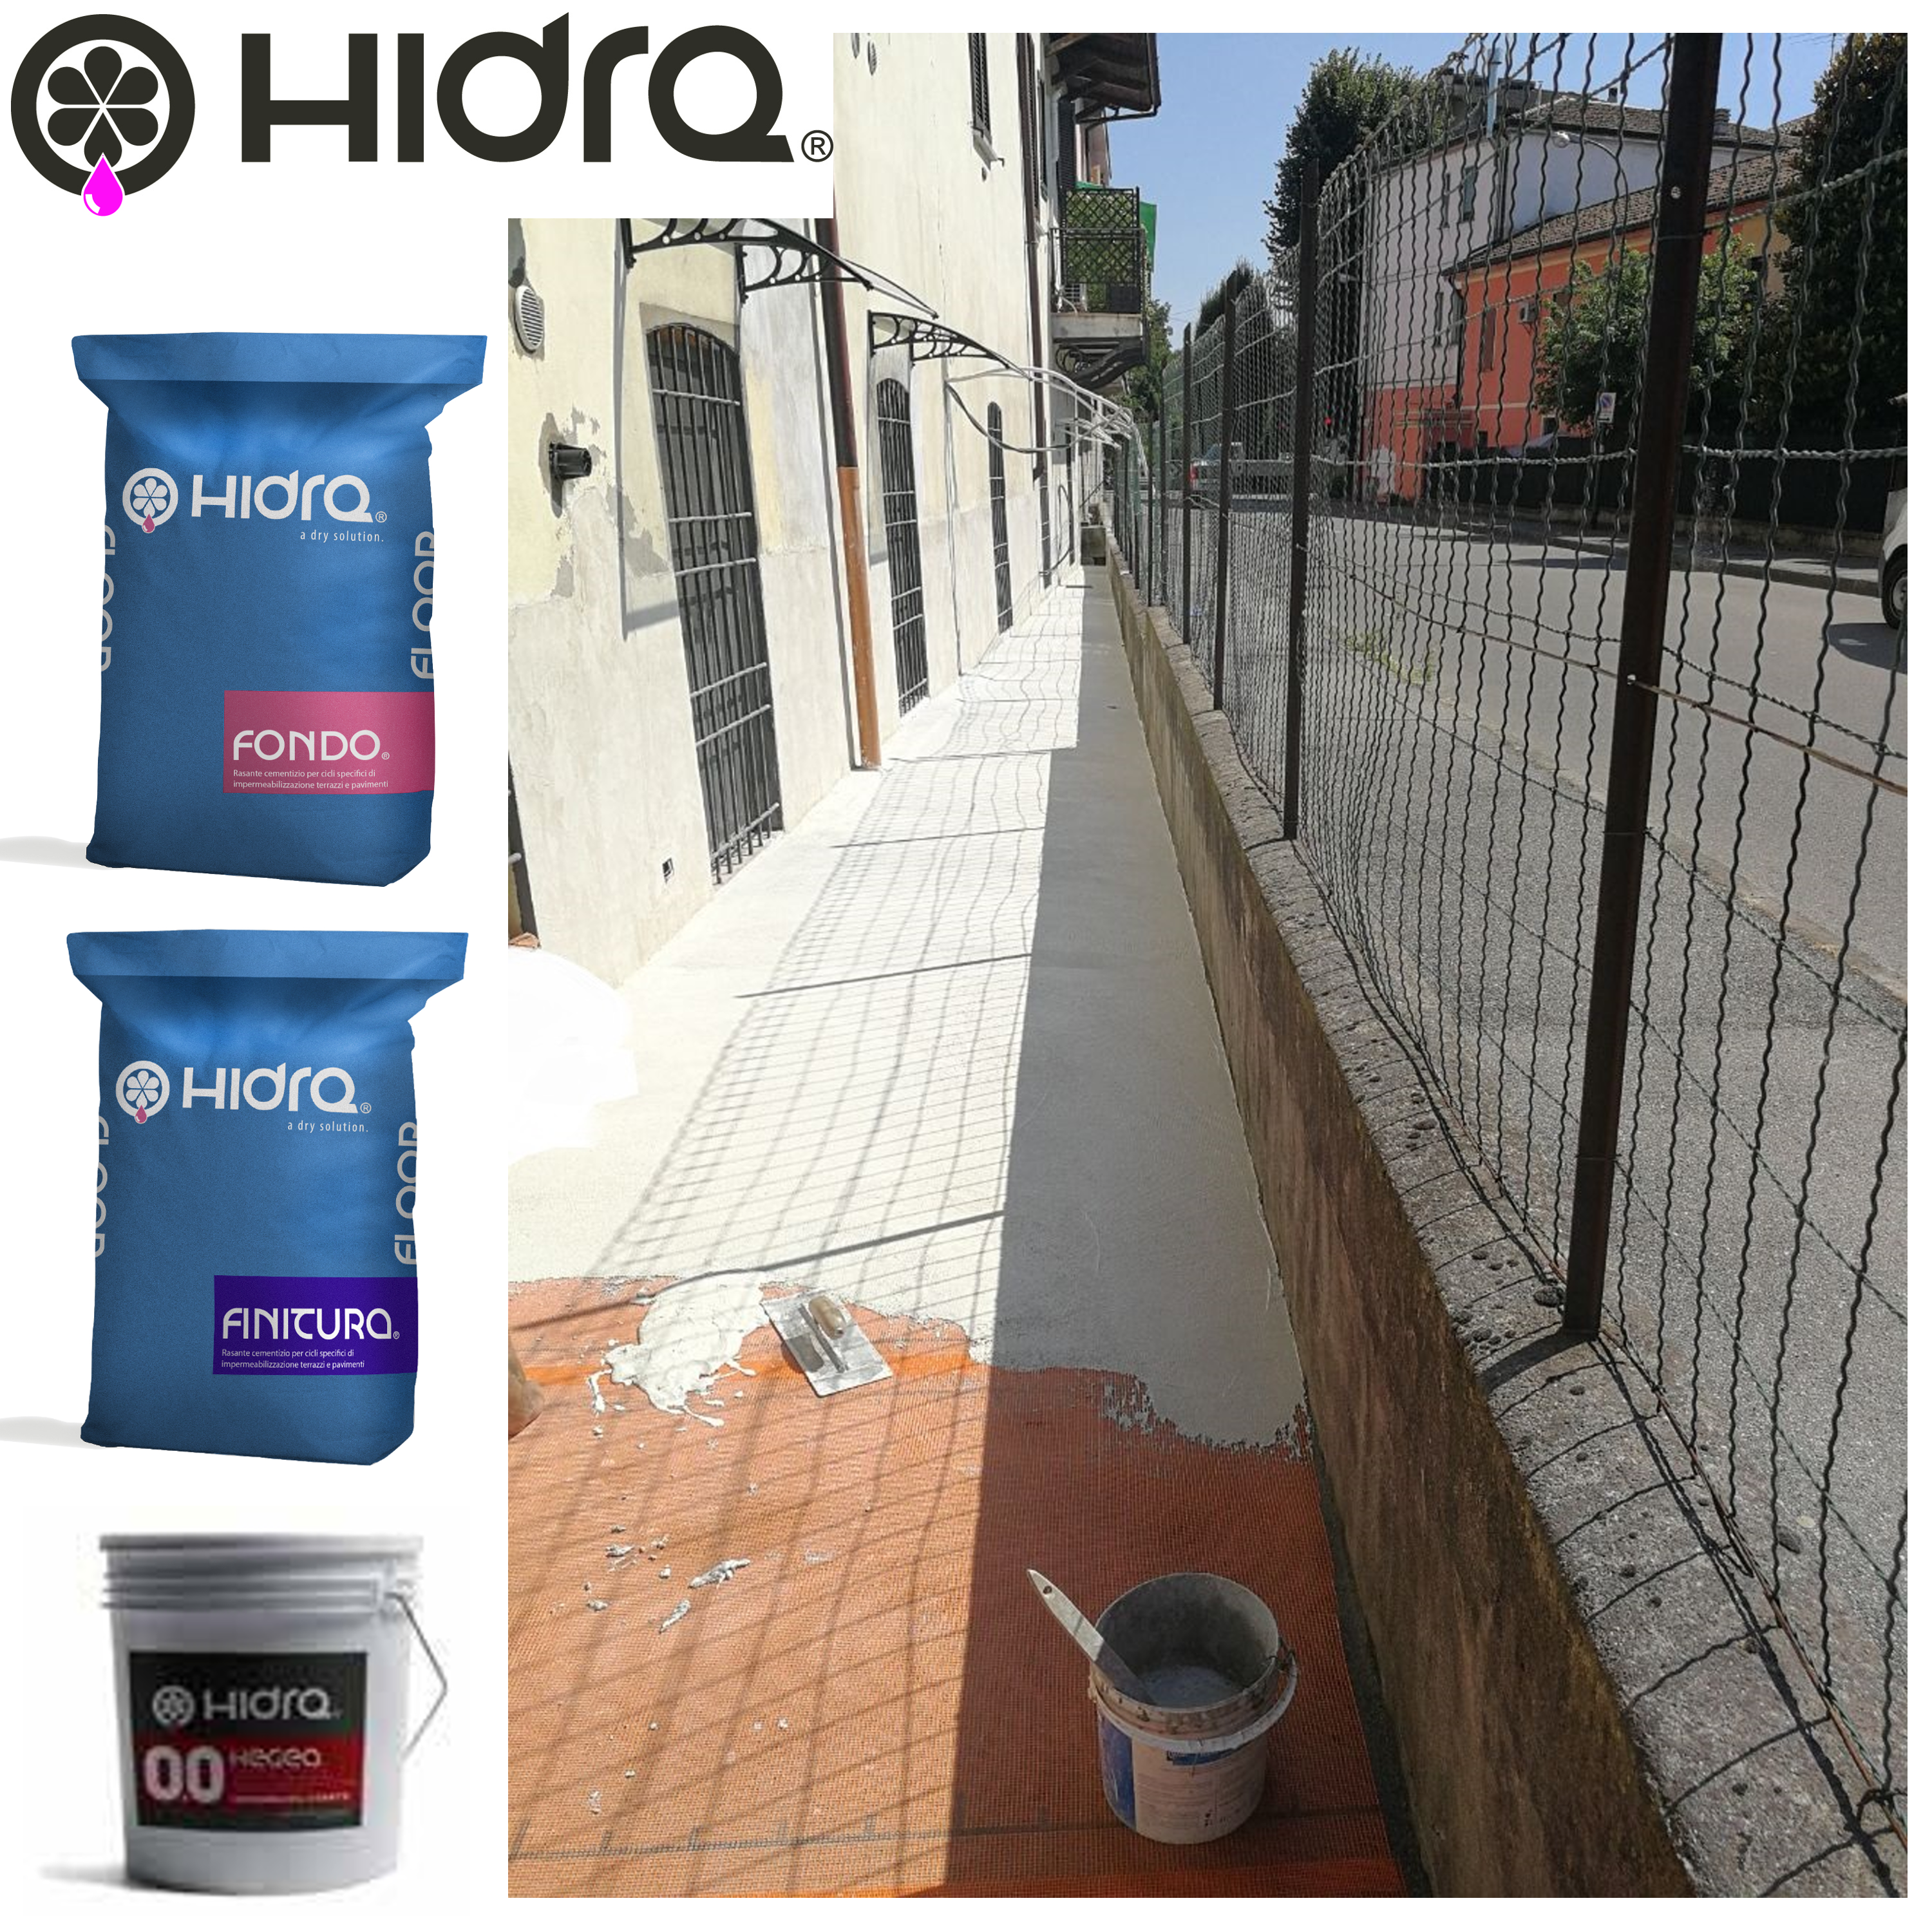 hidra floor